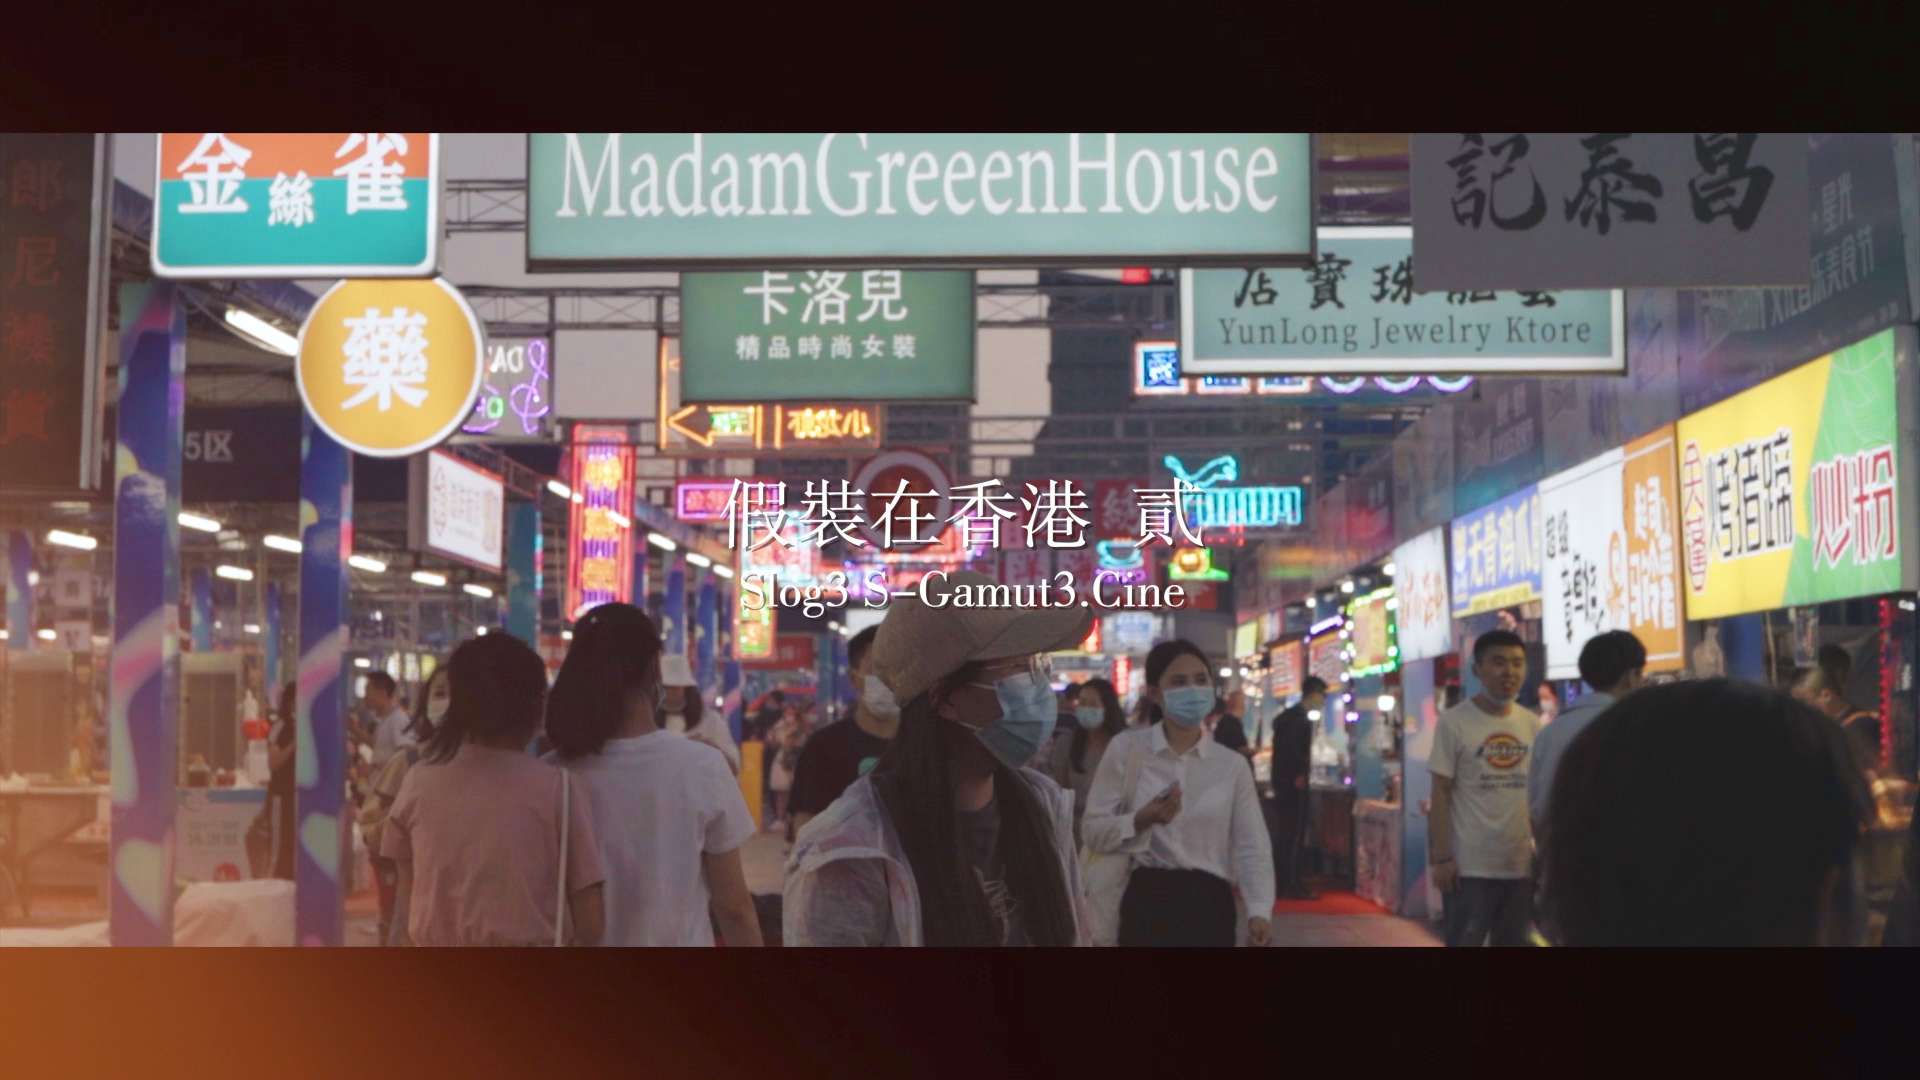 假装在香港（贰）｜索尼ALPHA电影感｜Slog3 S-Gamut3.Cine